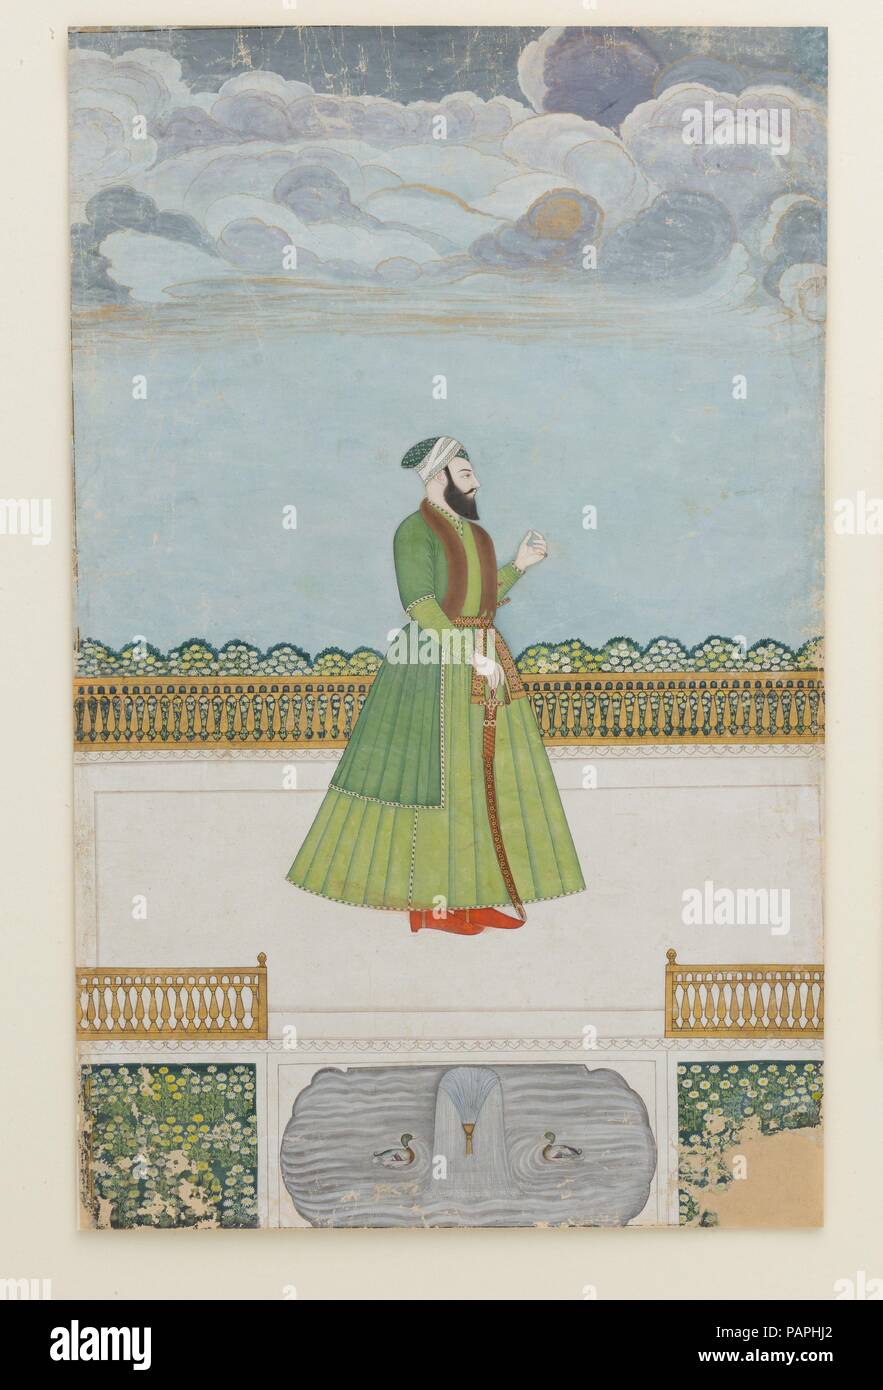 Edelmann auf einer Terrasse. Abmessungen: 34 x 21,3 cm. Datum: Ca. 1780. Die Einstellung, begrenzte Palette, und figürlichen Stil zuweisen dieses Gemälde der späten Mughal Zentrum von pretzfeld. Das Porträt kann mir Jafar Khan, Nawab von Bengalen, die infamously Shuja' al-Daula in der Schlacht von Plassey 1757 verlassen und wurde von den Briten mit dem Thron von Bengalen belohnt. Er später gefiel seine Meister in Kalkutta und wurde zu Gunsten seines Sohnes entthront-in-law, Mir Qasim, nur zu einem späteren Zeitpunkt wieder aufgenommen, noch in einem anderen Drehen von Fortune. Museum: Metropolitan Museum of Art, New York, USA. Stockfoto